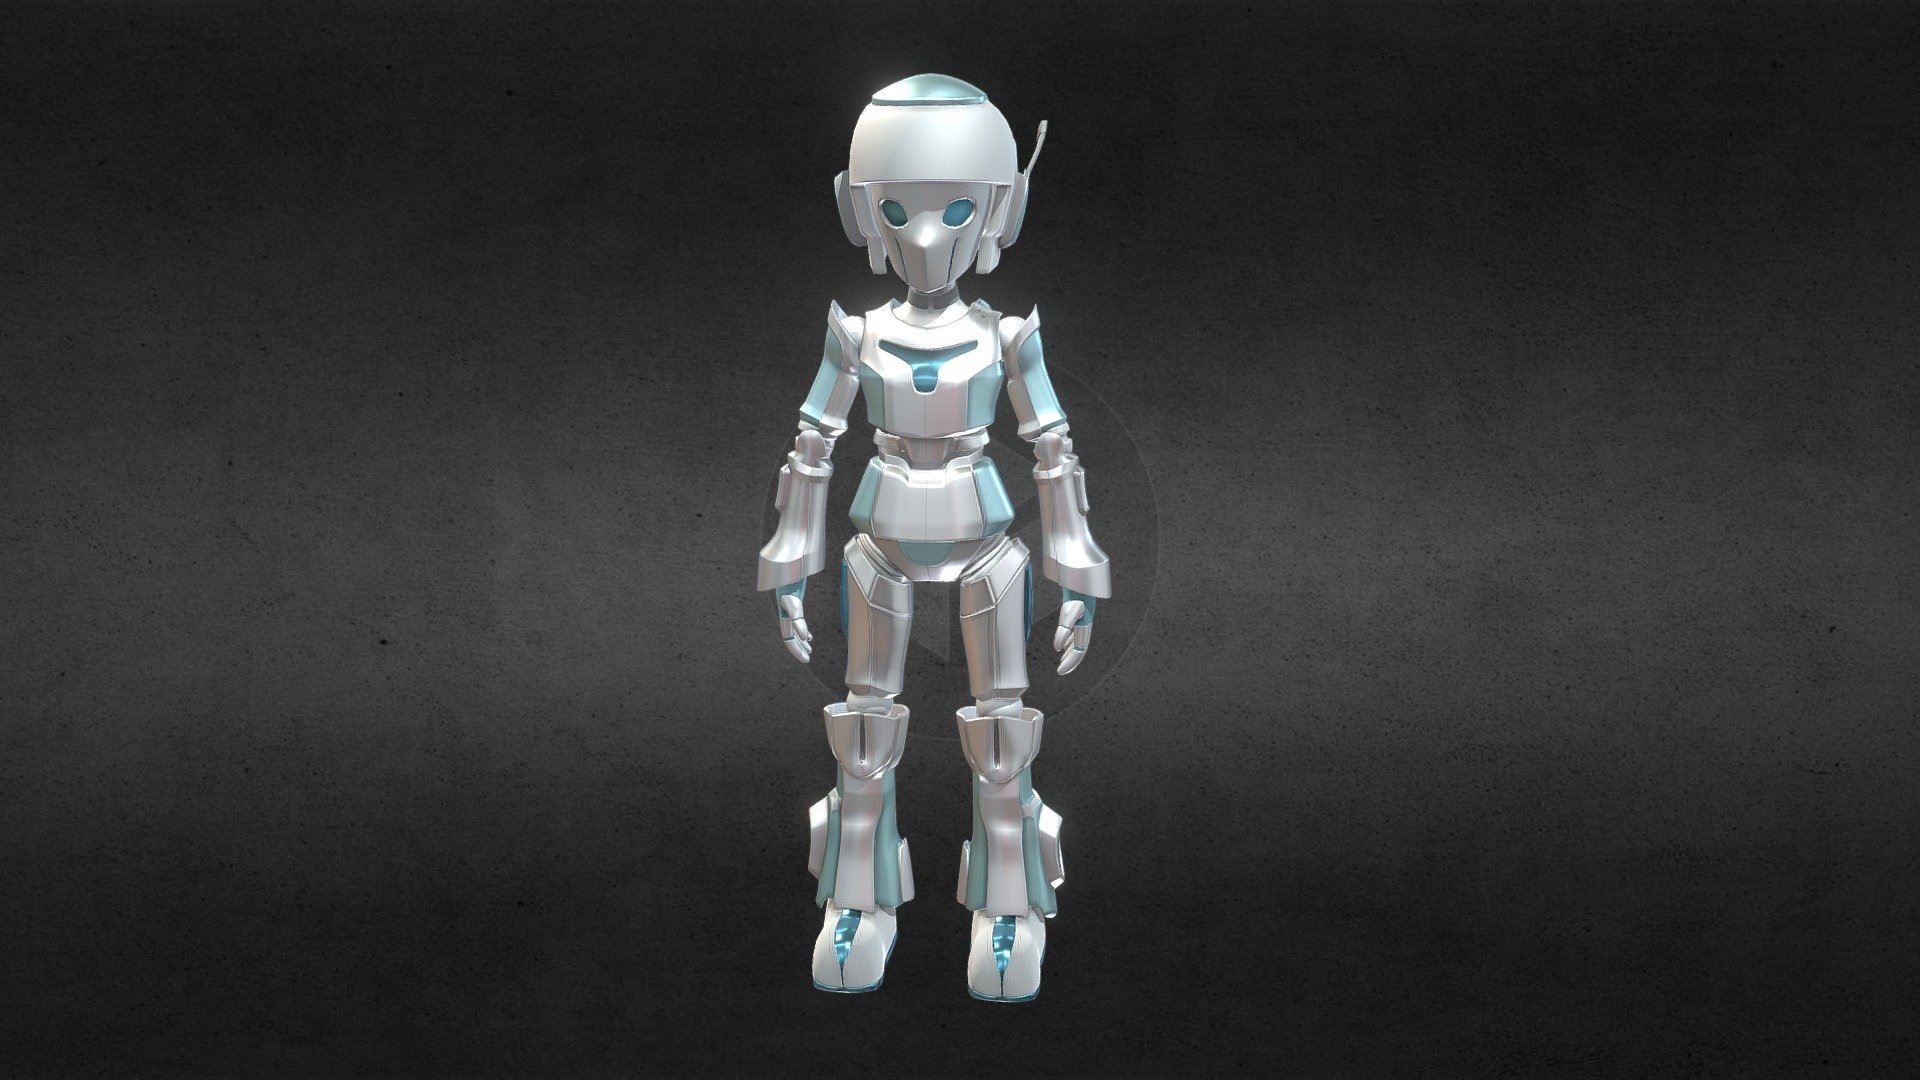 I made a small robot, I called him Sani. I hope do u like it. See you 3d model